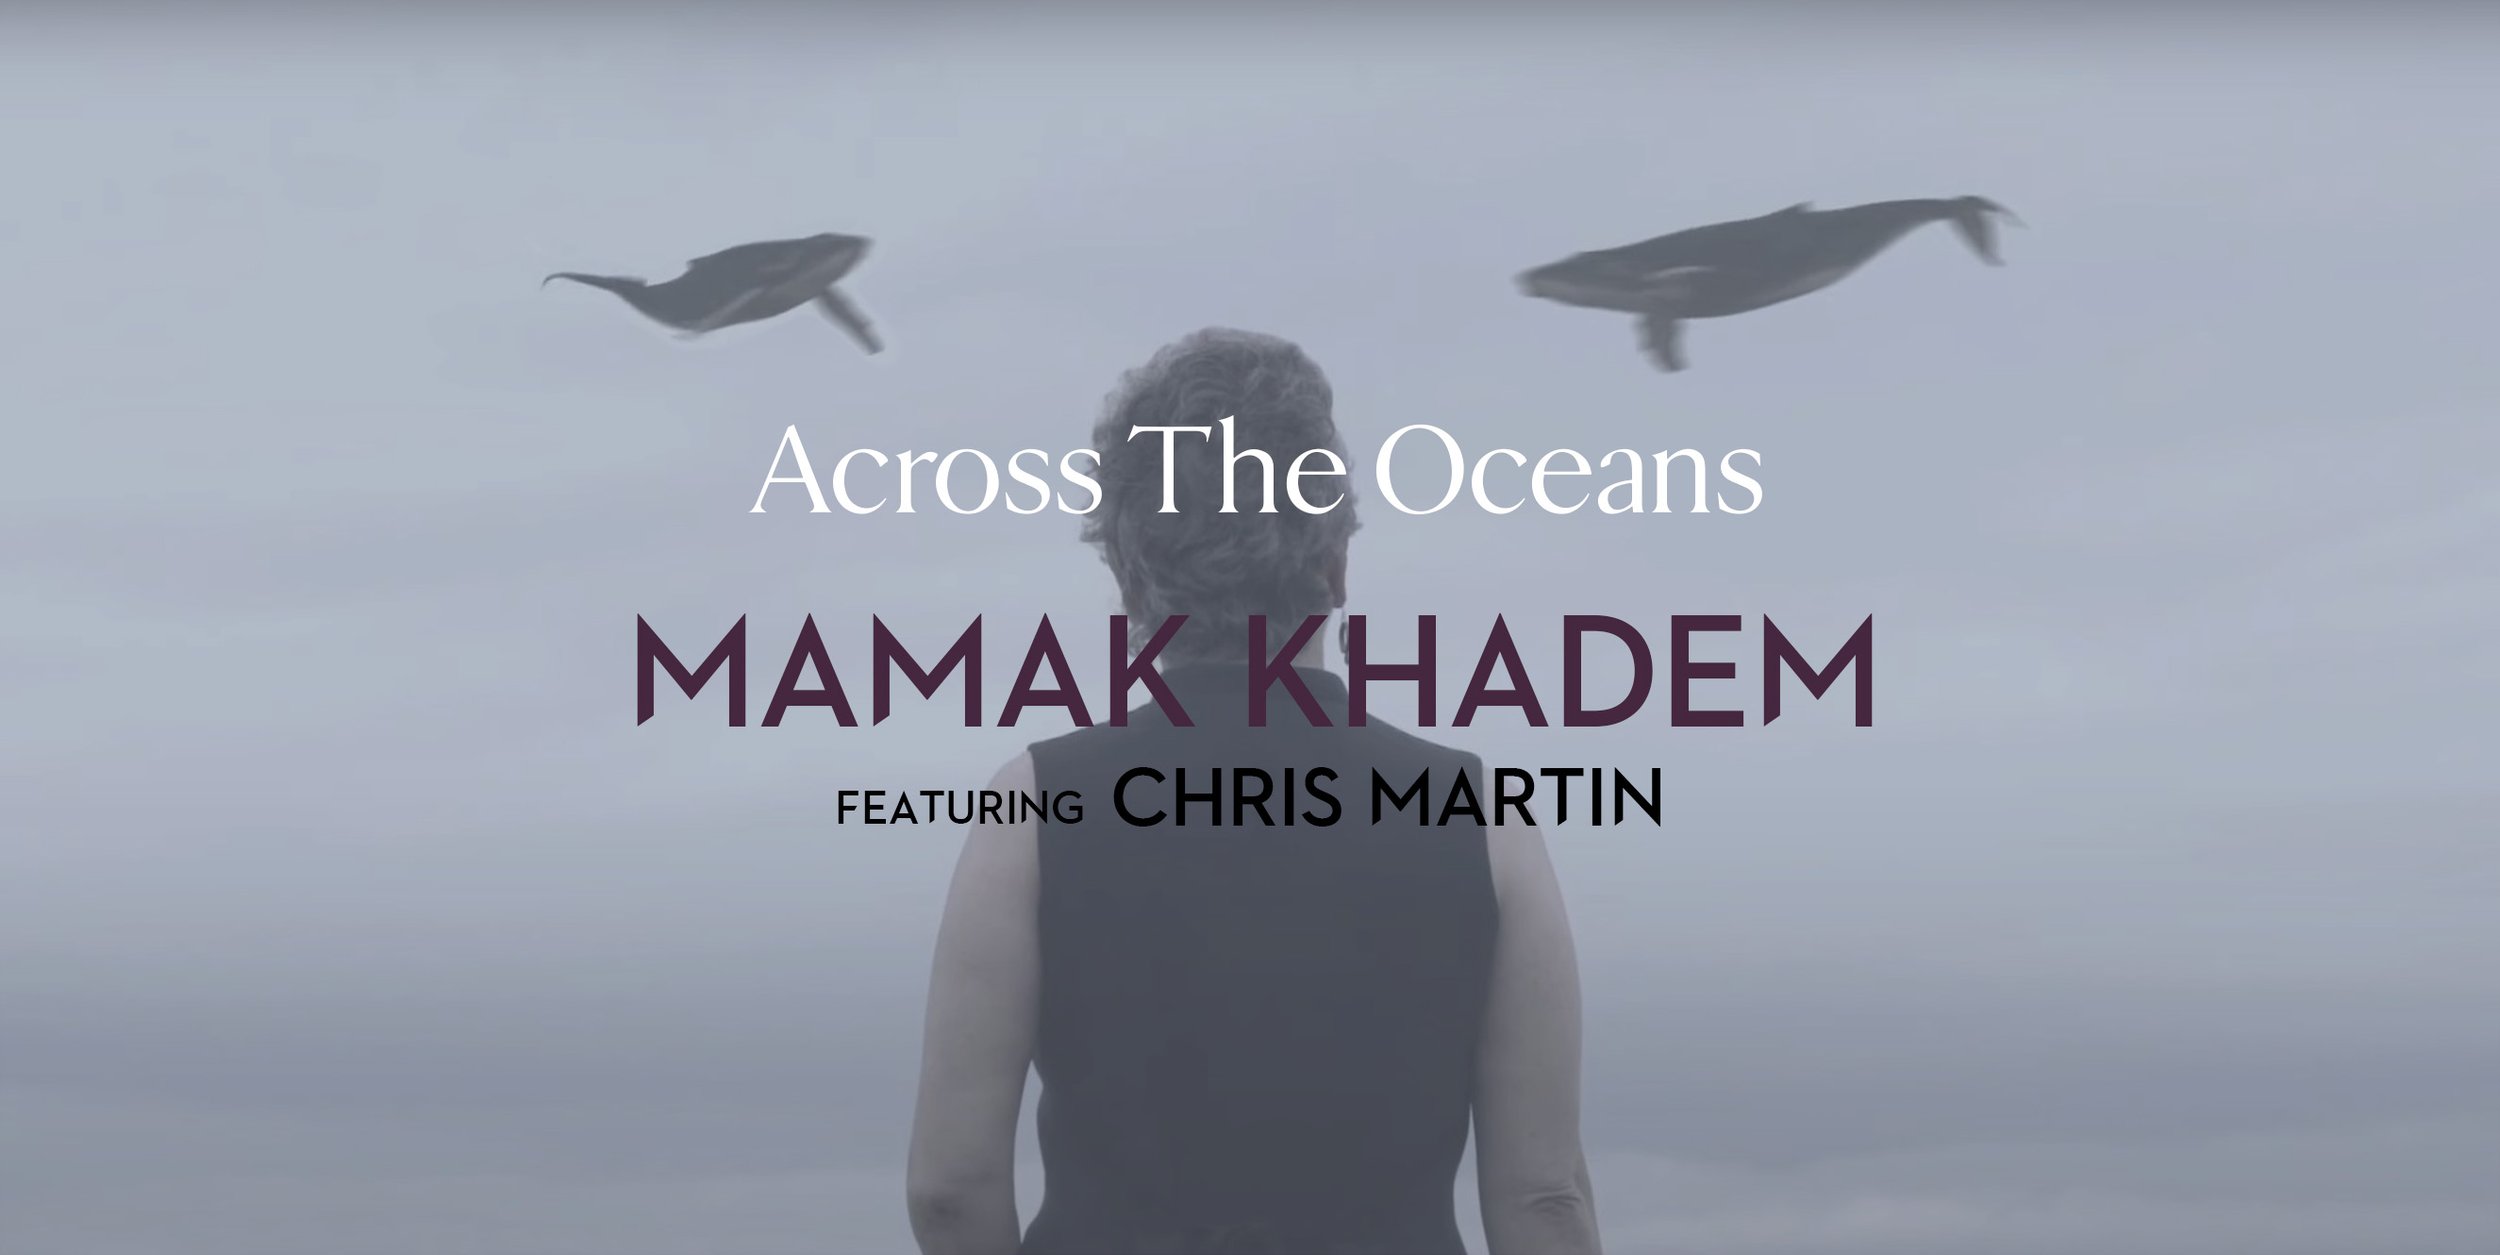 mamak-khadem-across-the-oceans-header.jpg